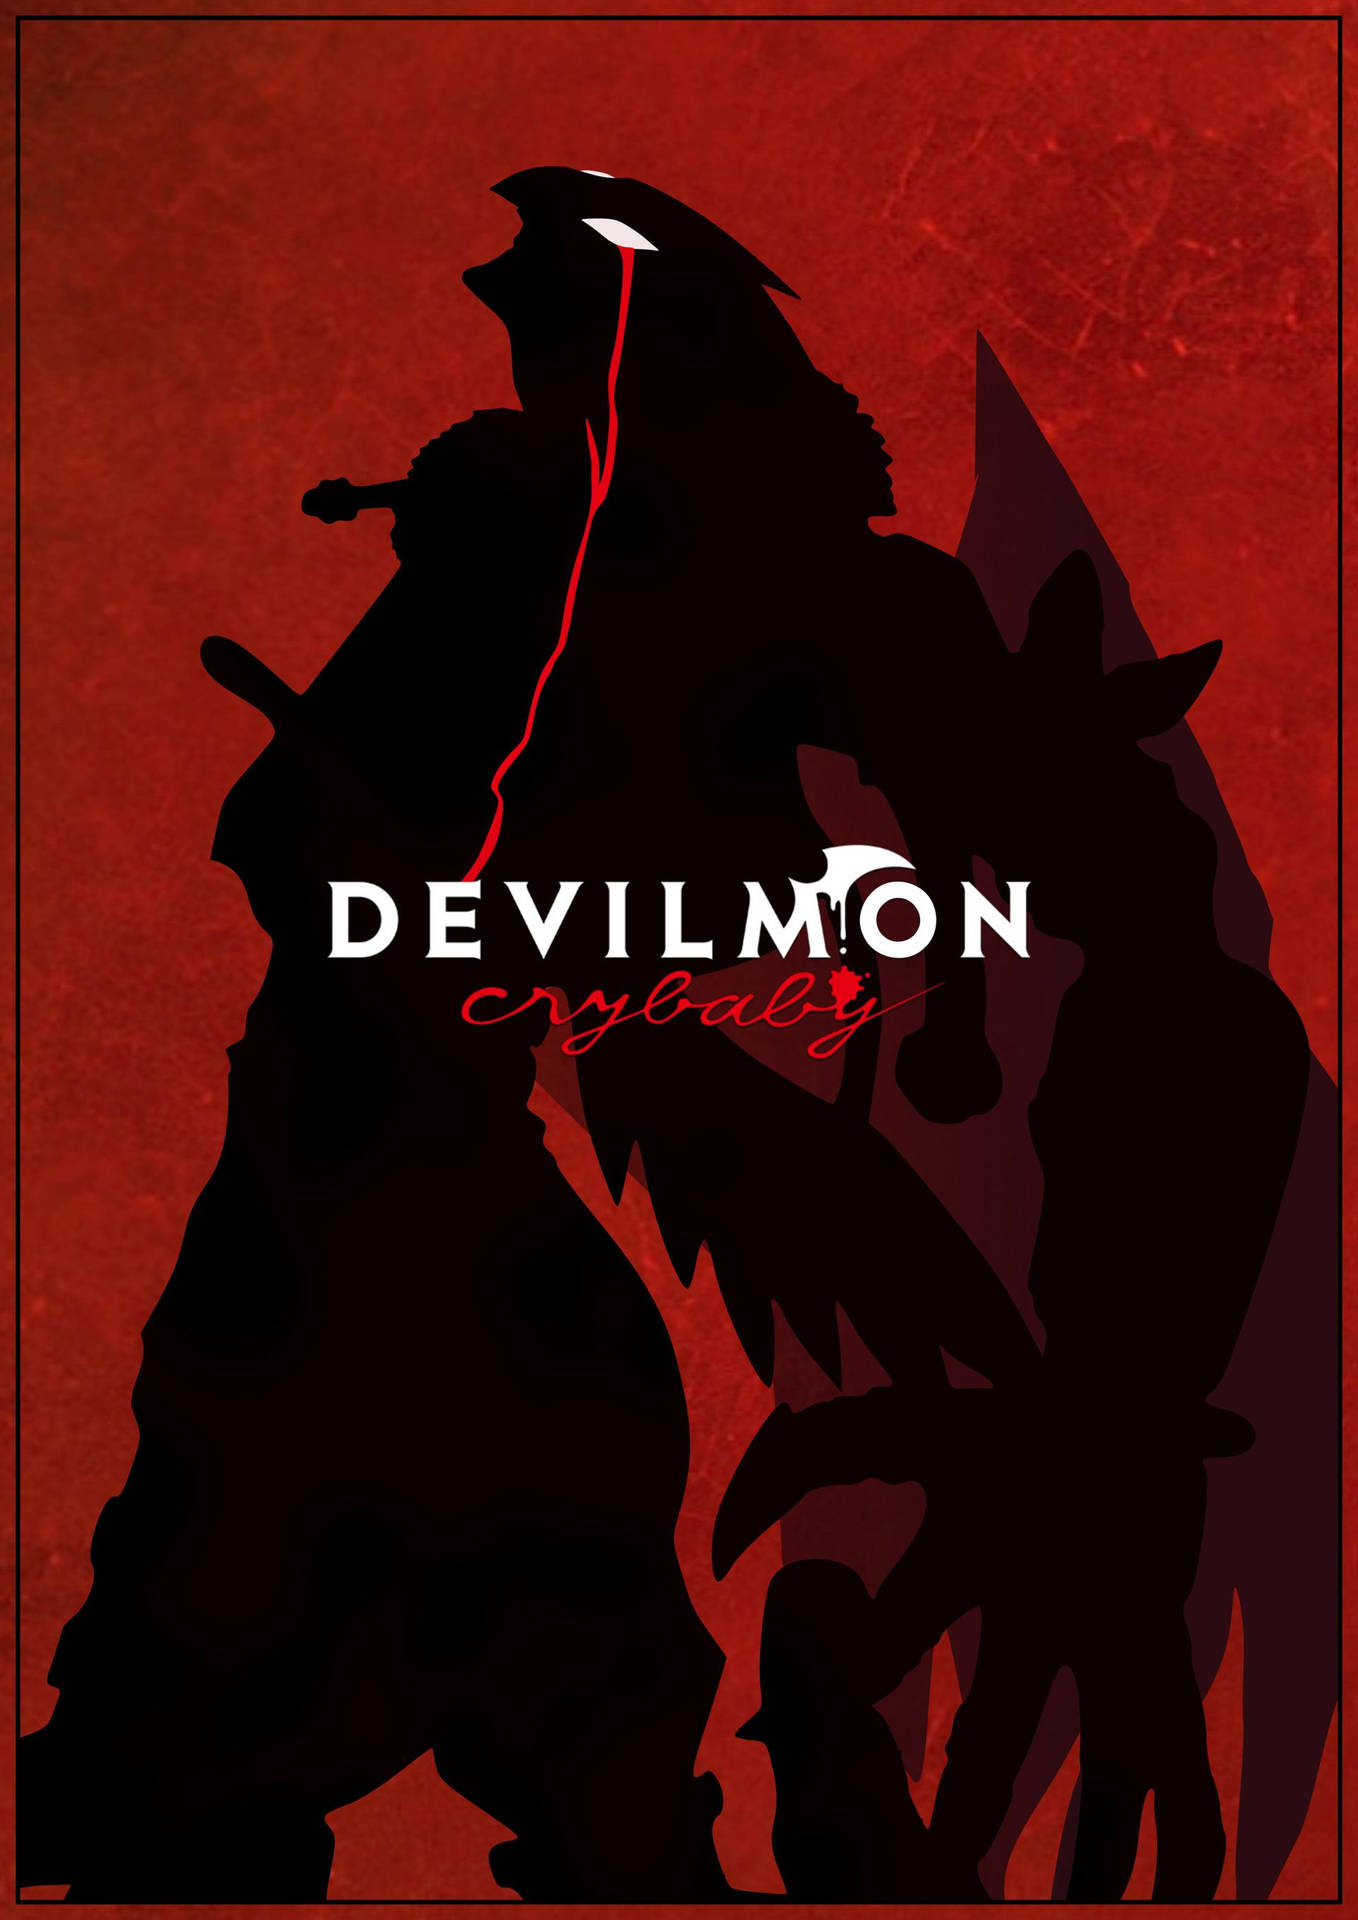 Devilman and Devilman Crybaby Wallpaper